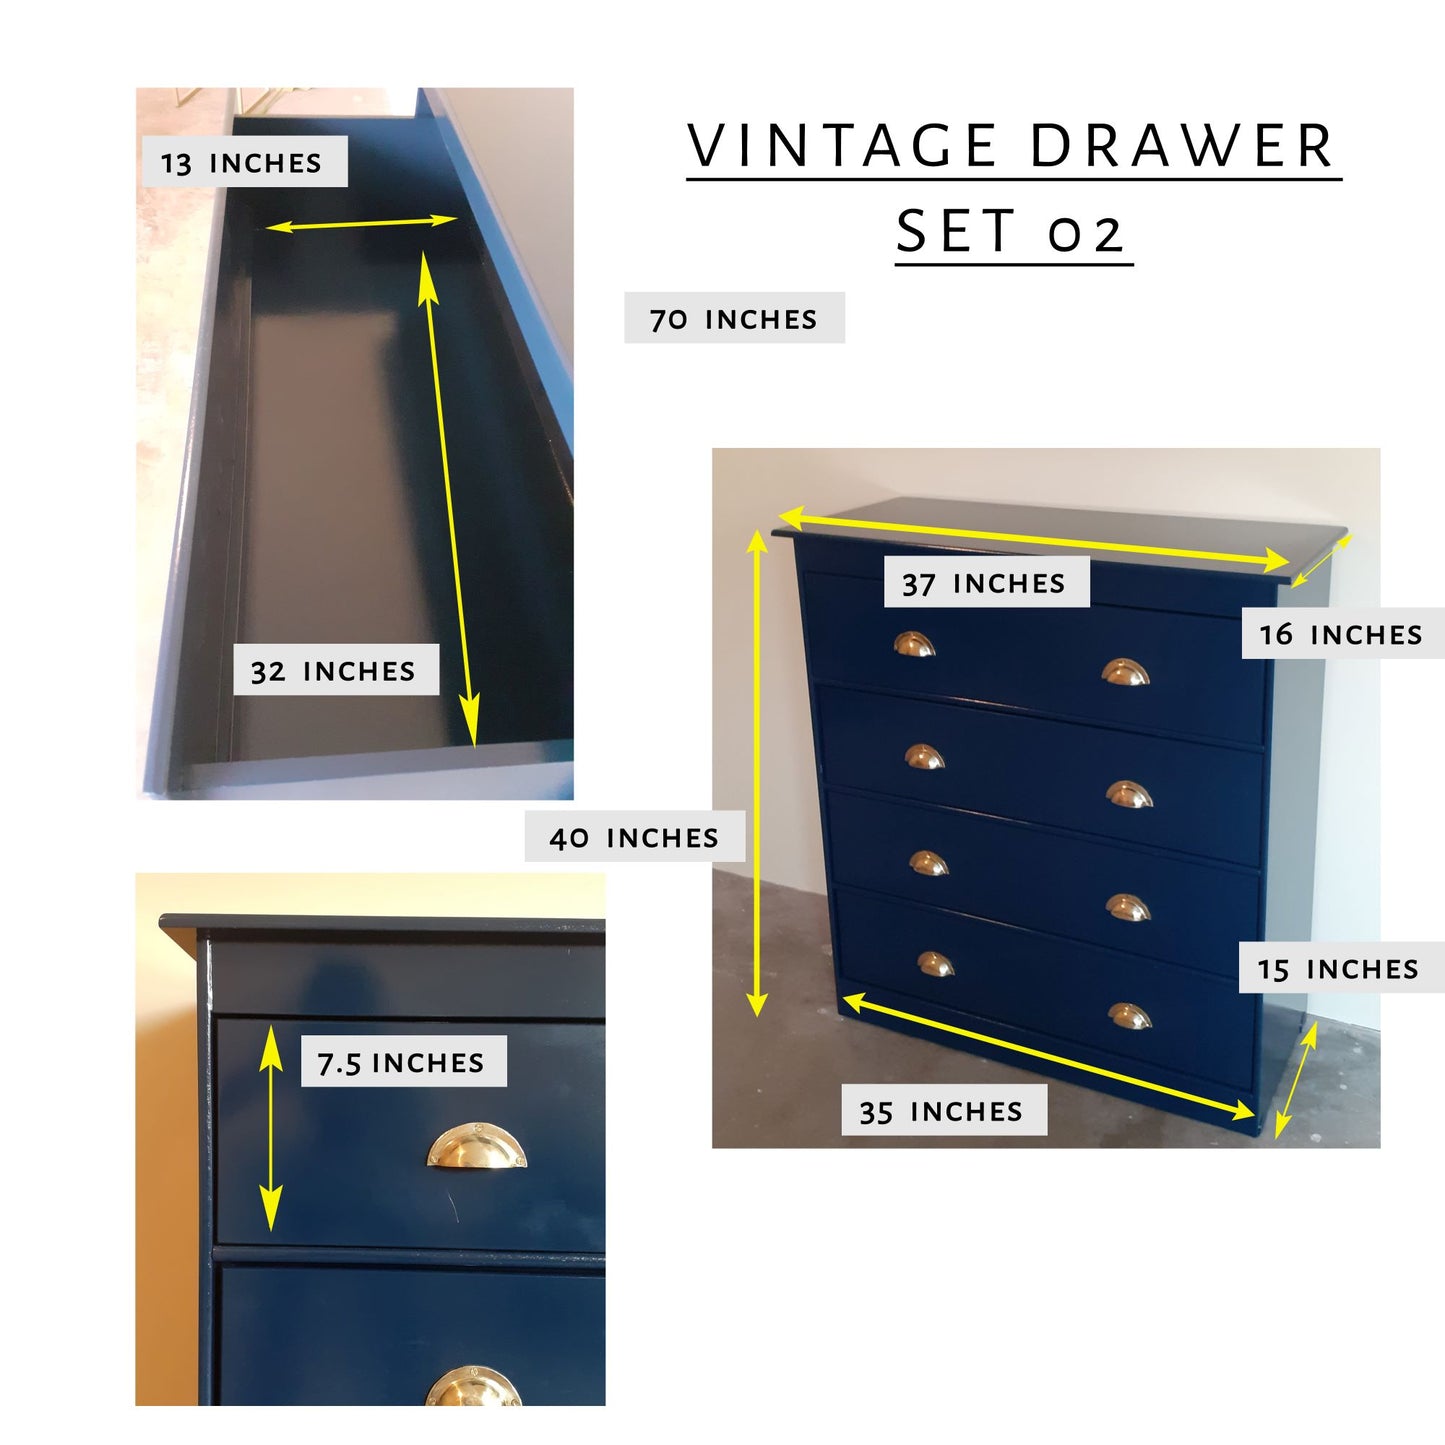 Vintage Drawer Set 02